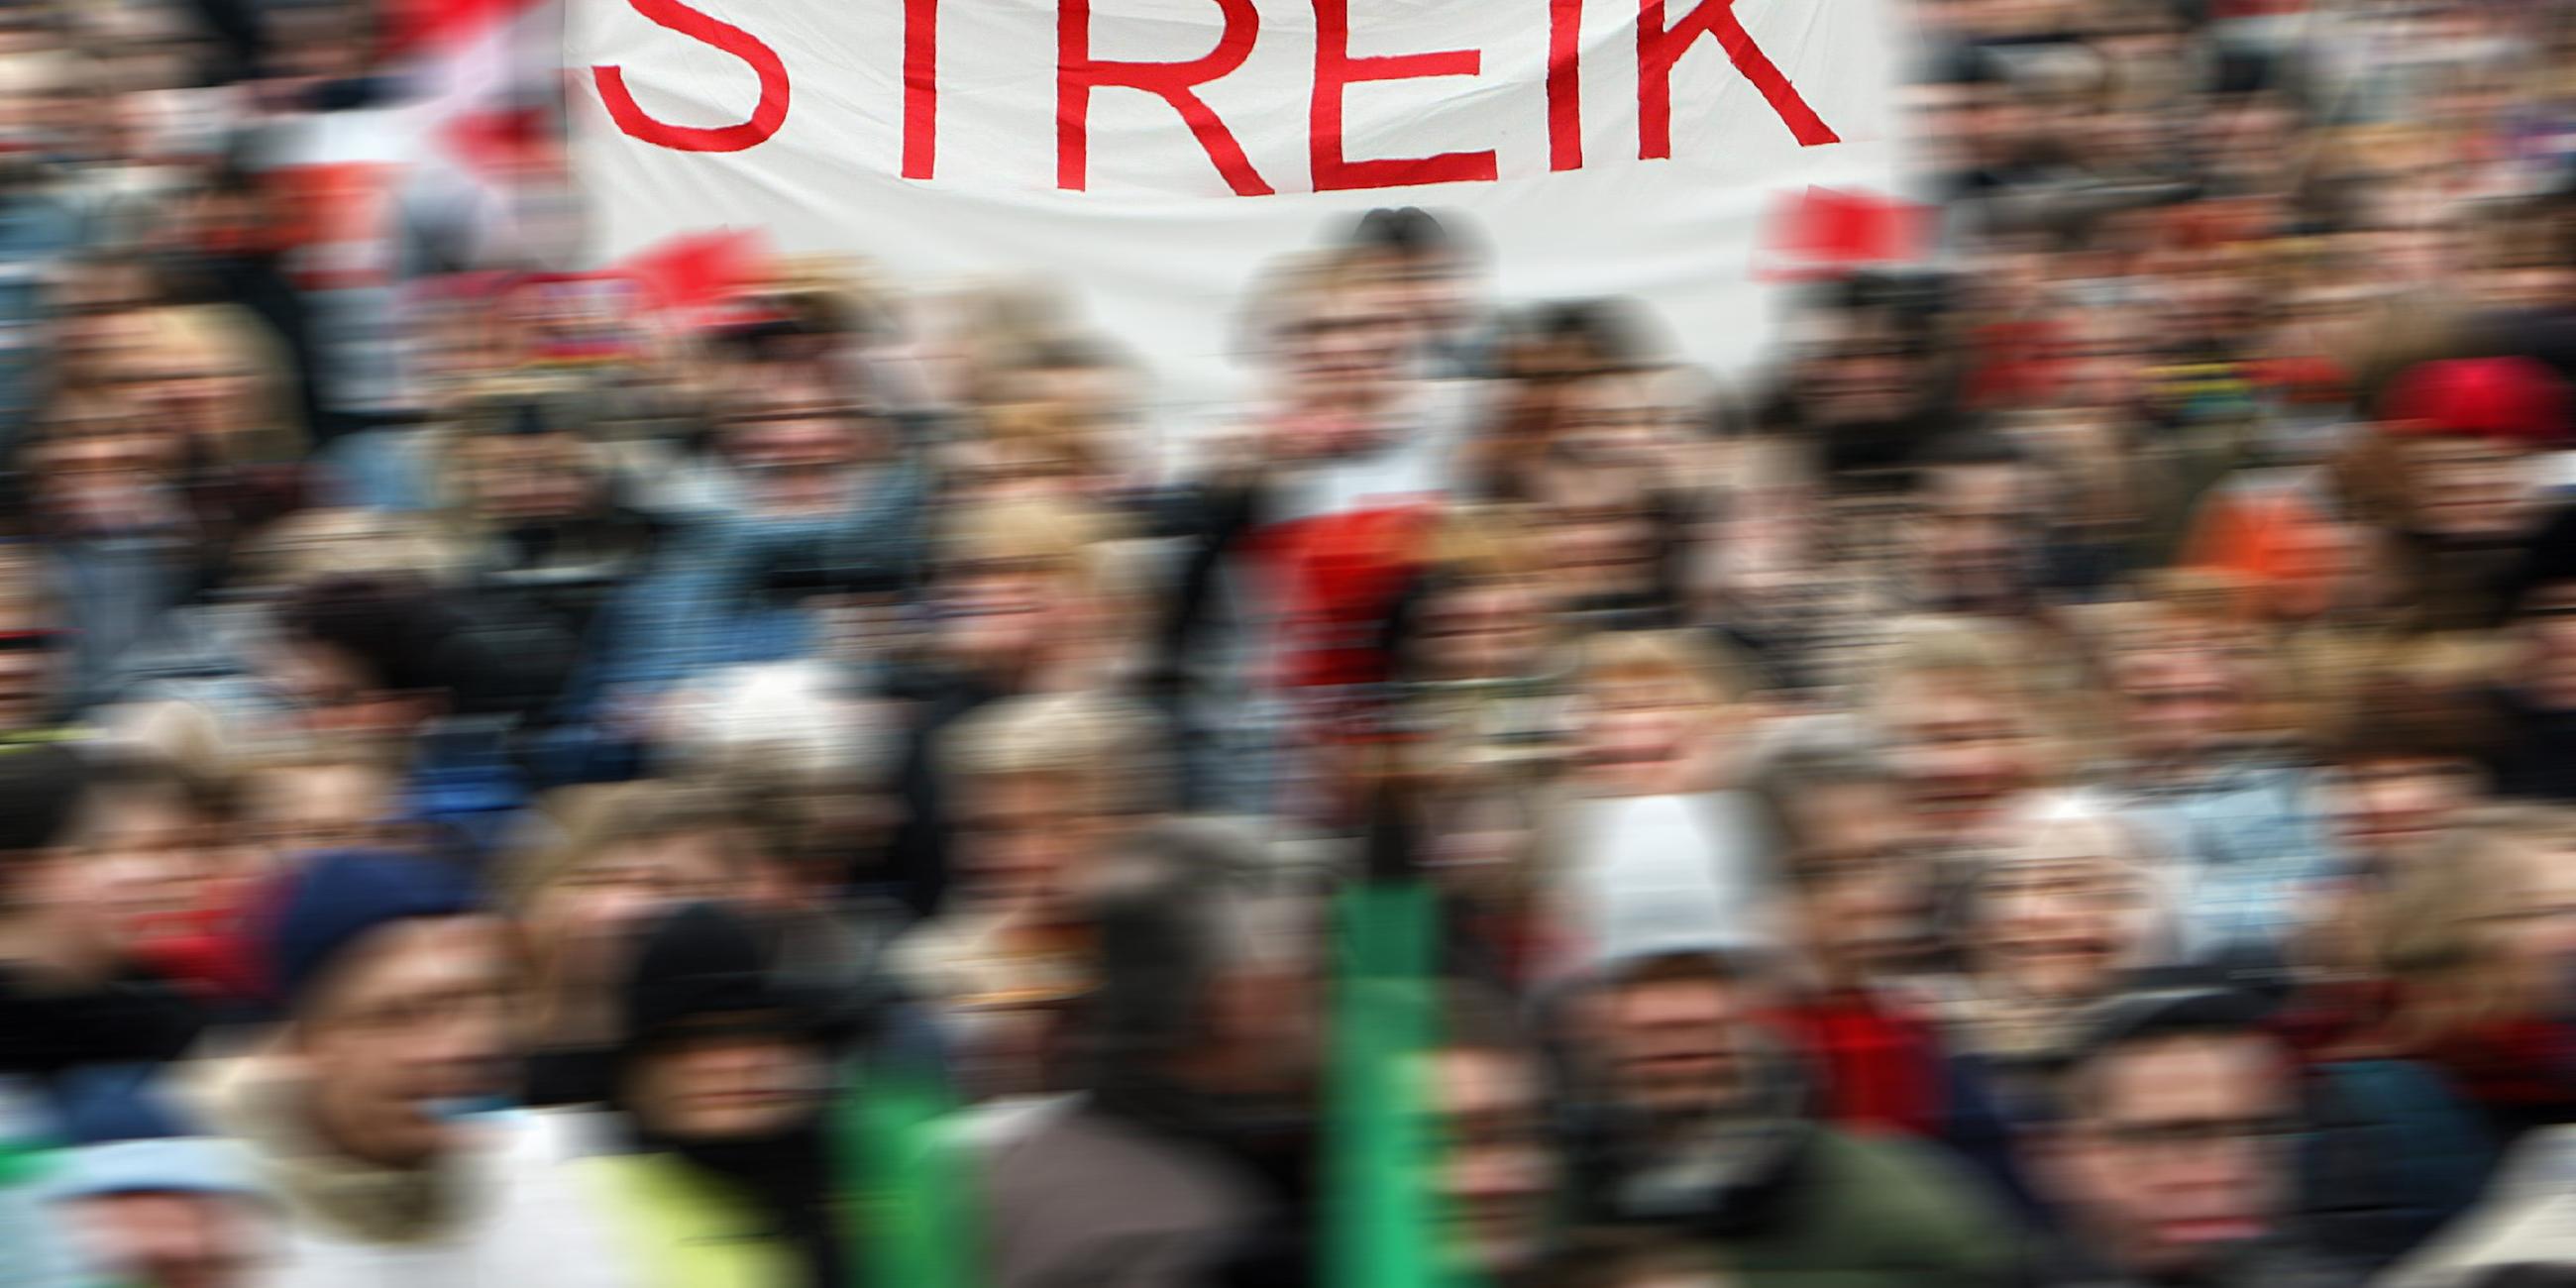 Symbolbild Streik - Transparent mit Aufschrift "Wie streiken"